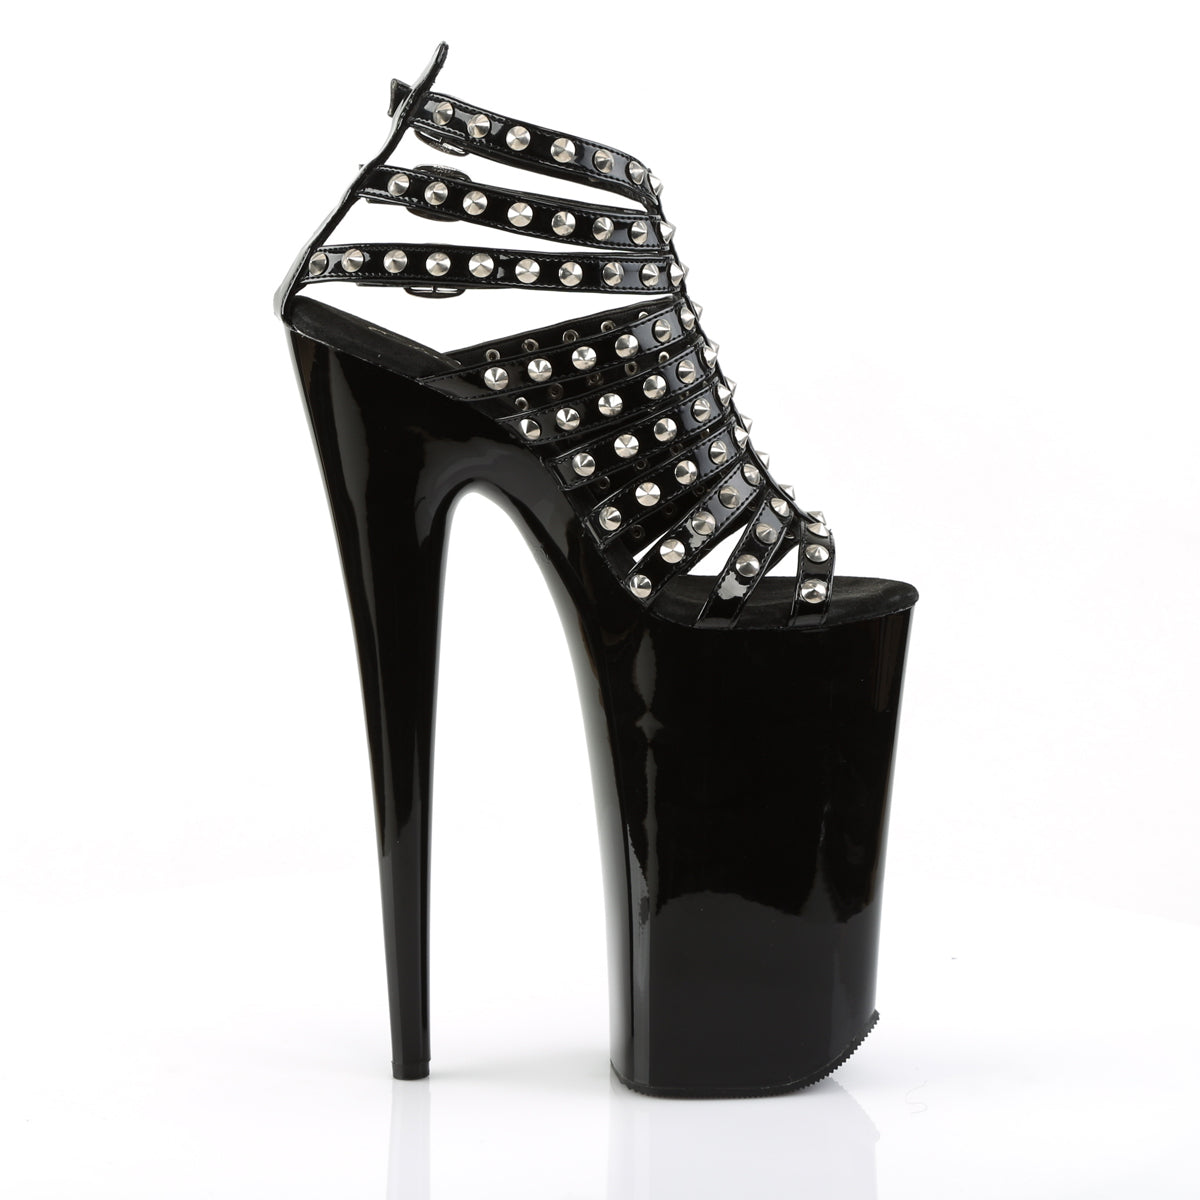 BEYOND-093 Pleaser Black Platform Shoes [Extreme High Heels]